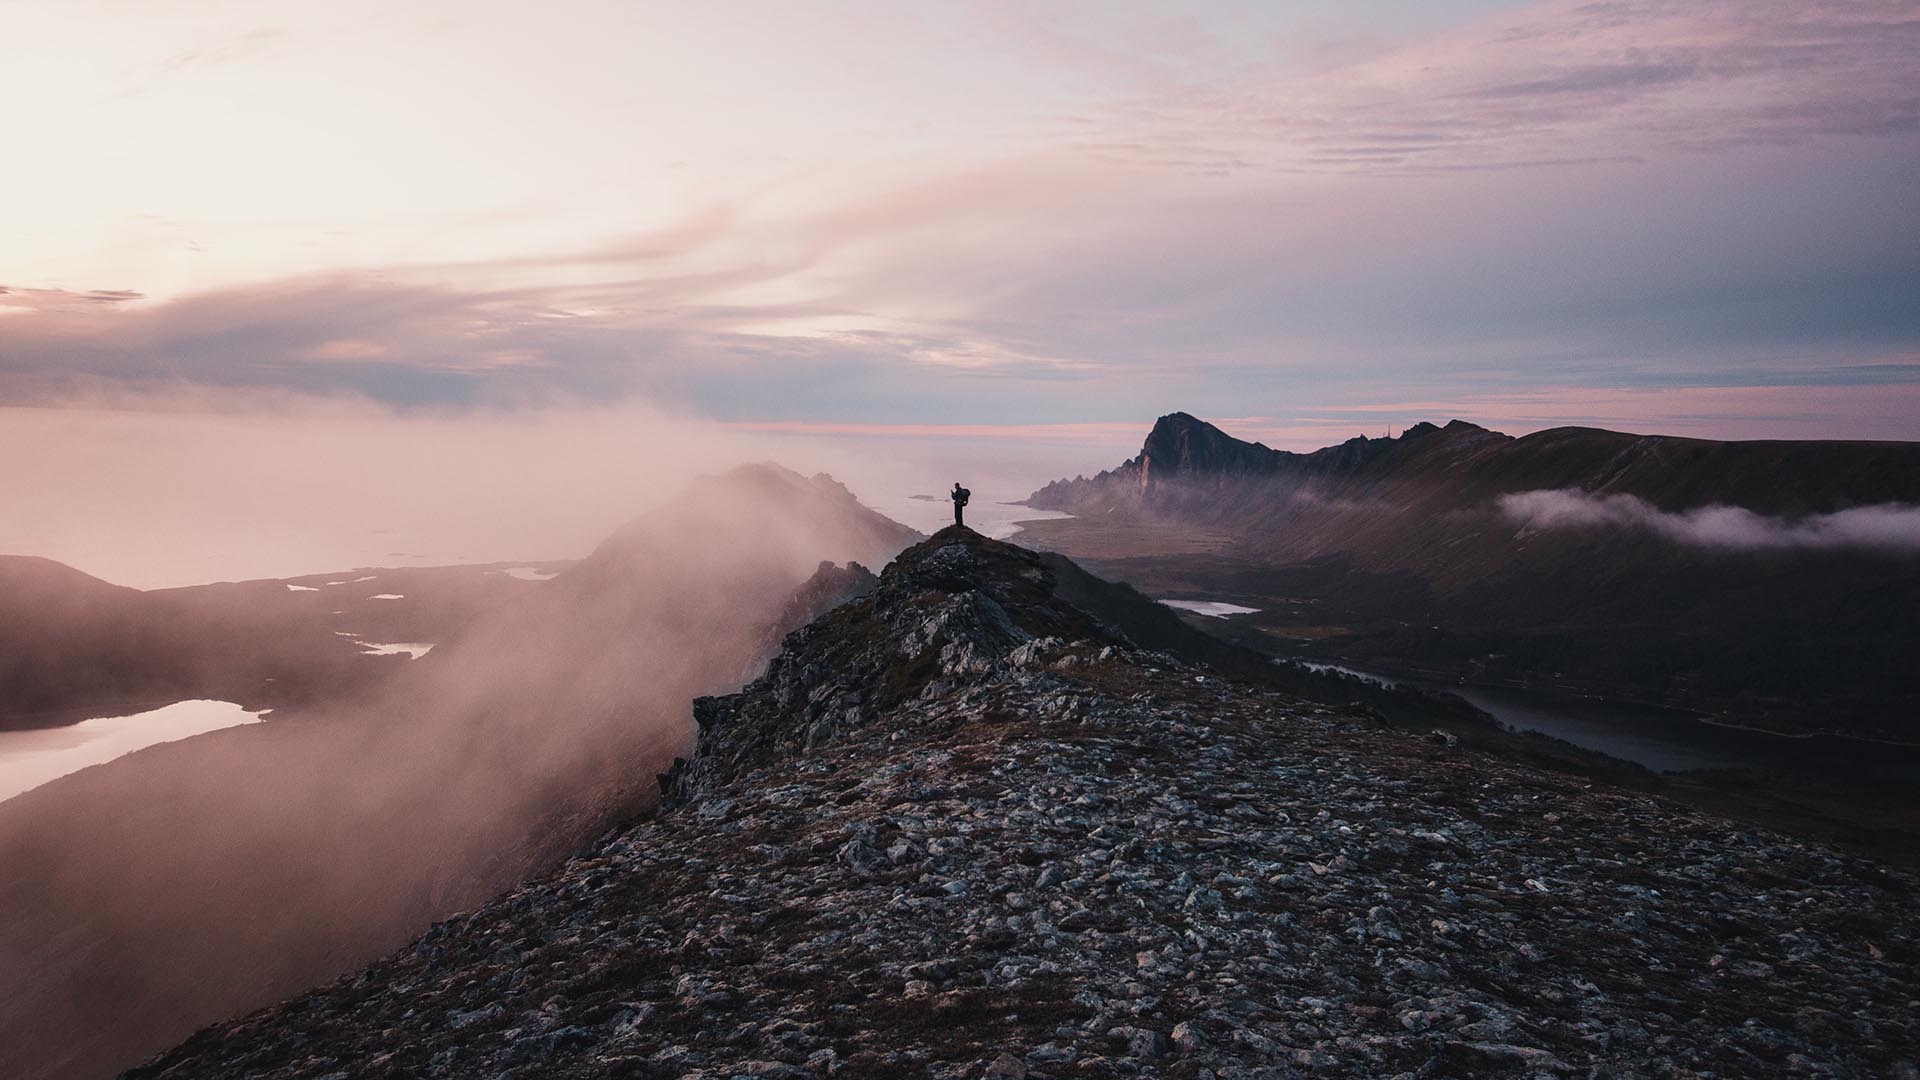 Mann auf Bergspitze mit Meer und Nebel im Hintergrund